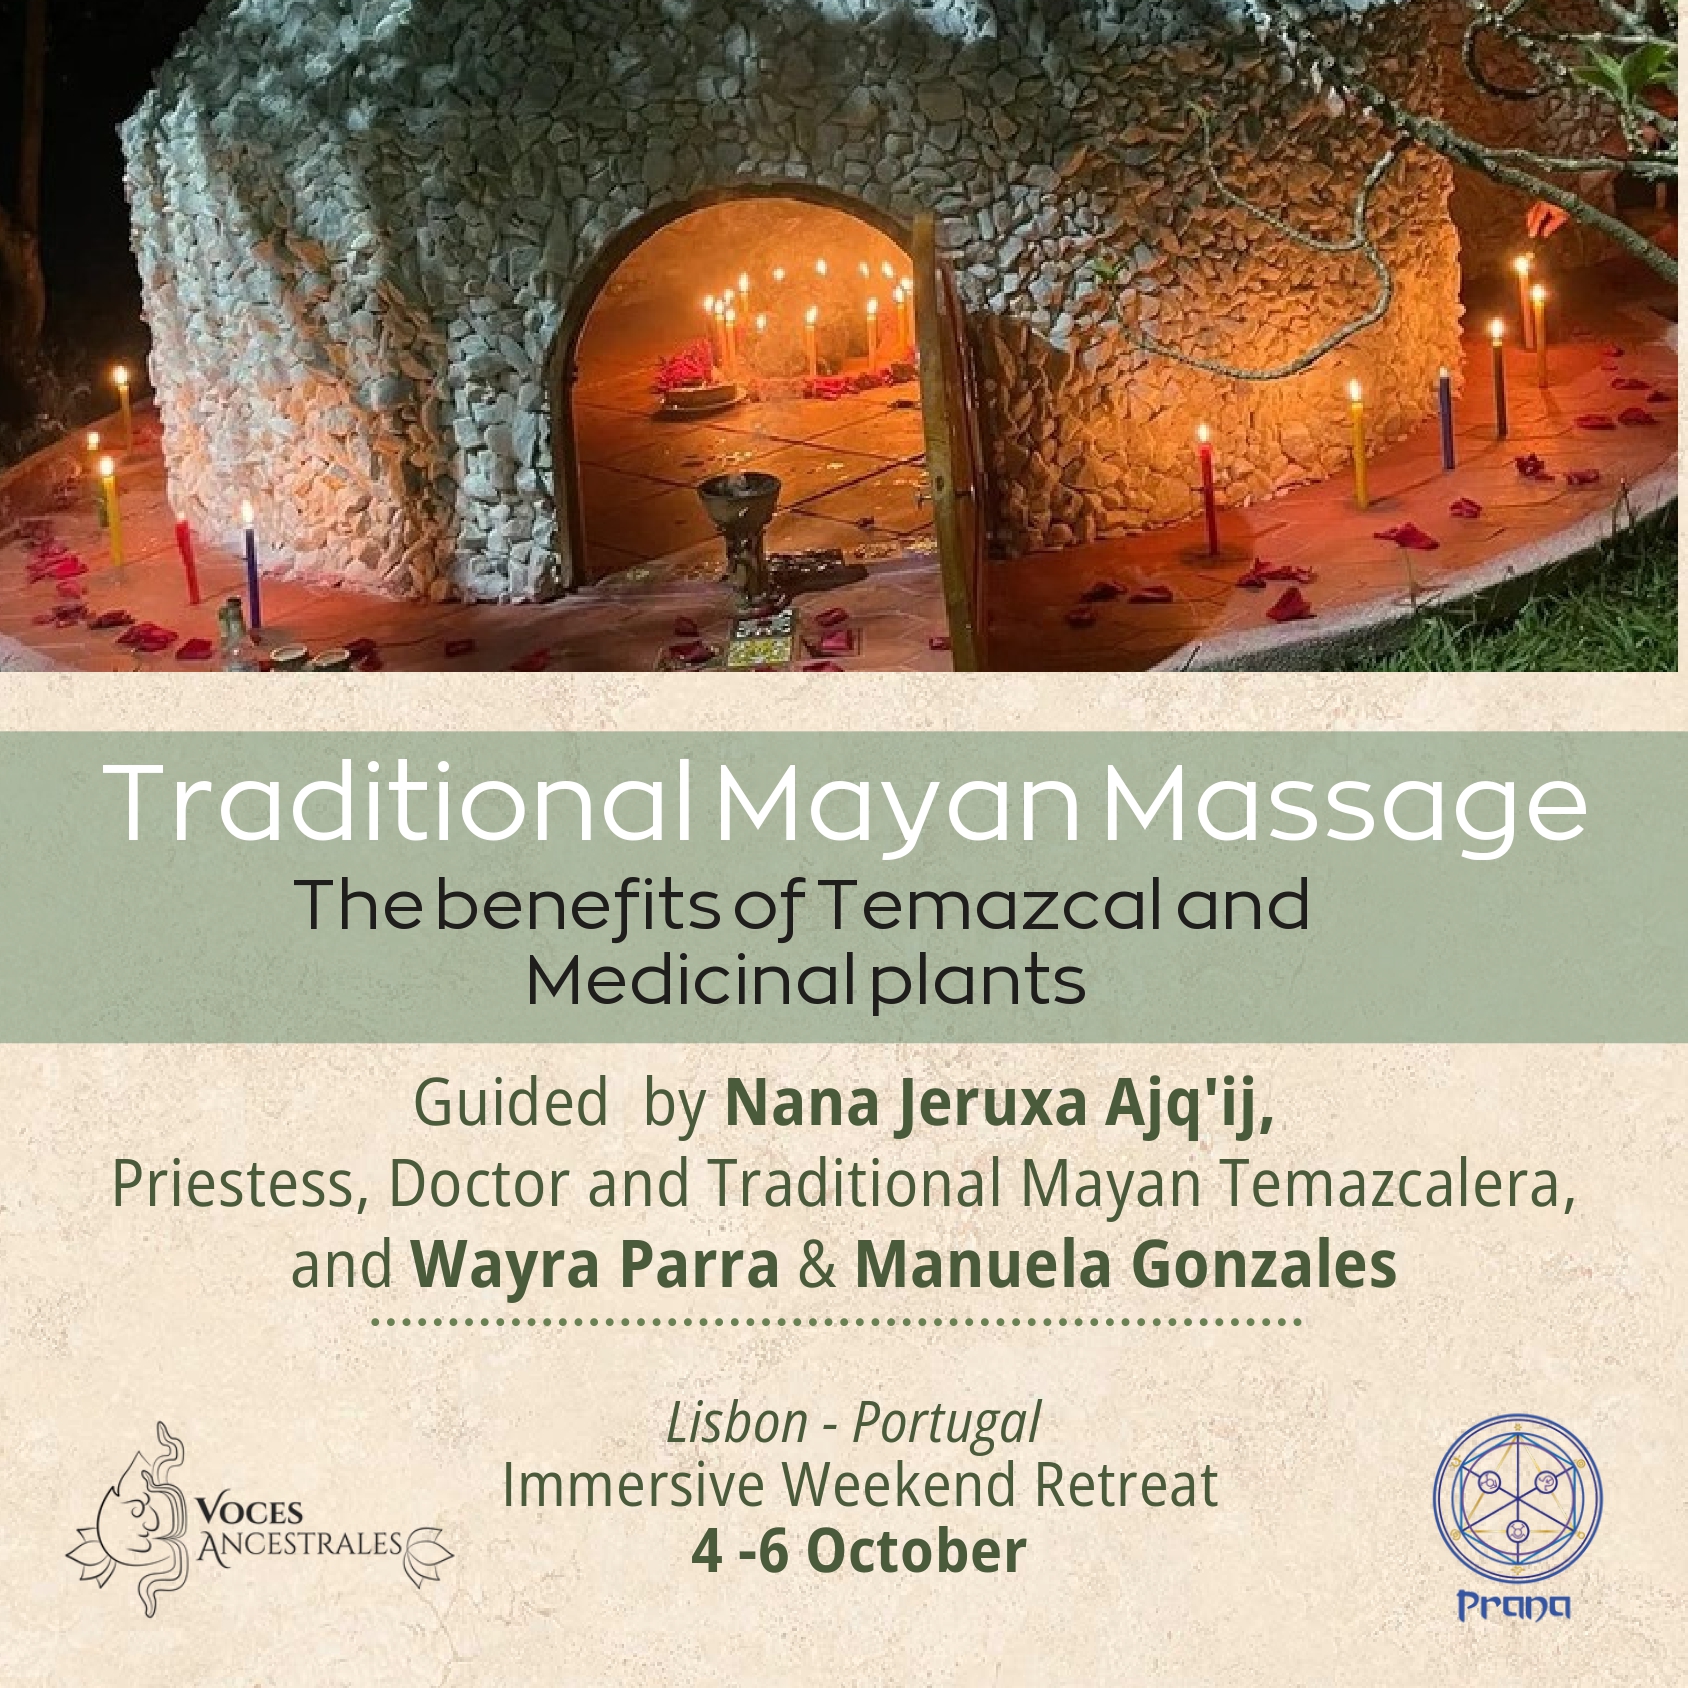 Traditional Mayan Massage